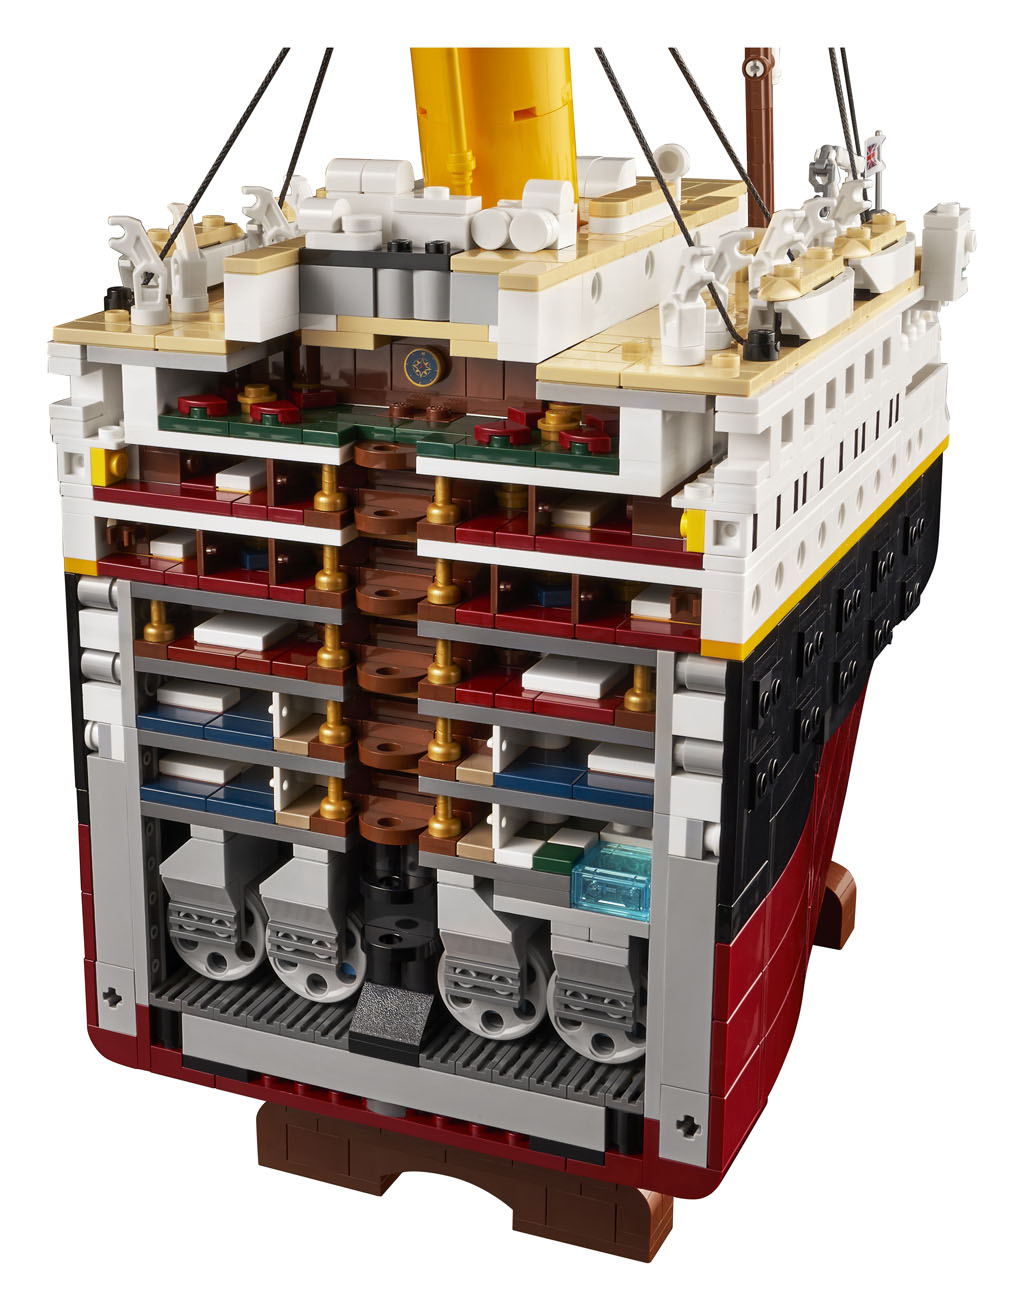 LEGO Titanic il Set più grande di sempre con 9000 Mattoncini (#10294) – (1)  –